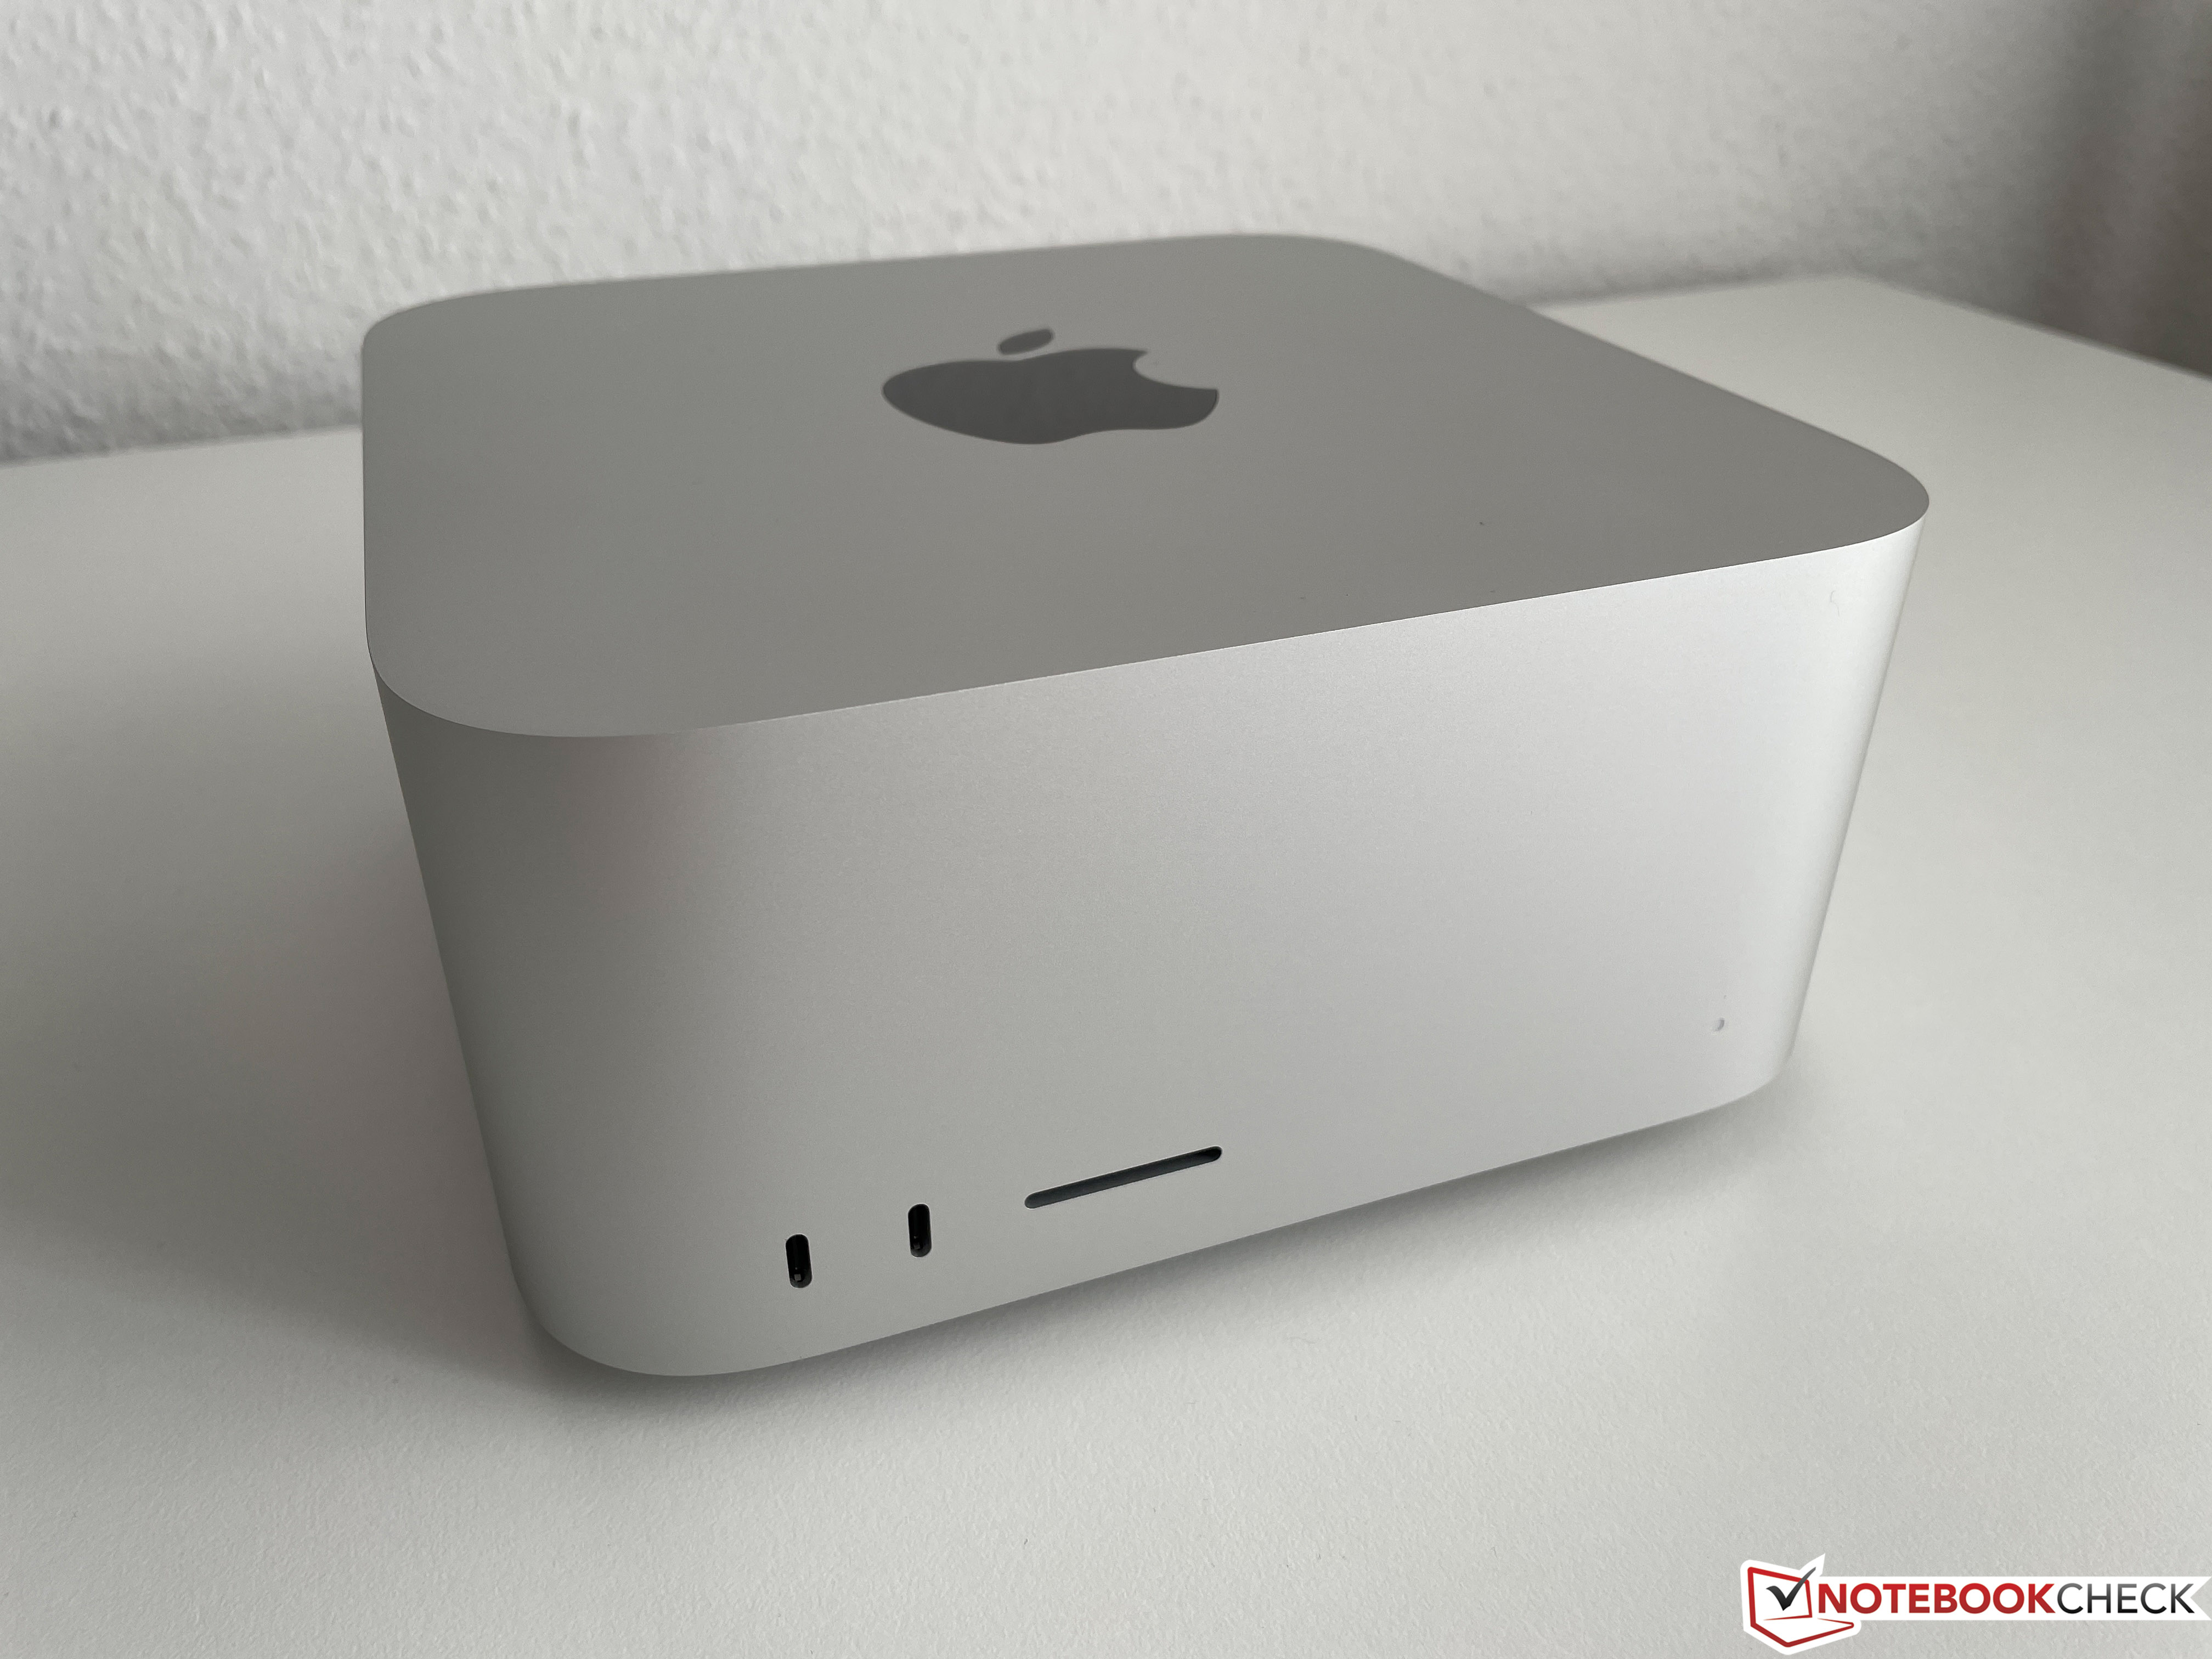 Apple Mac Studio (M1 Max) Review